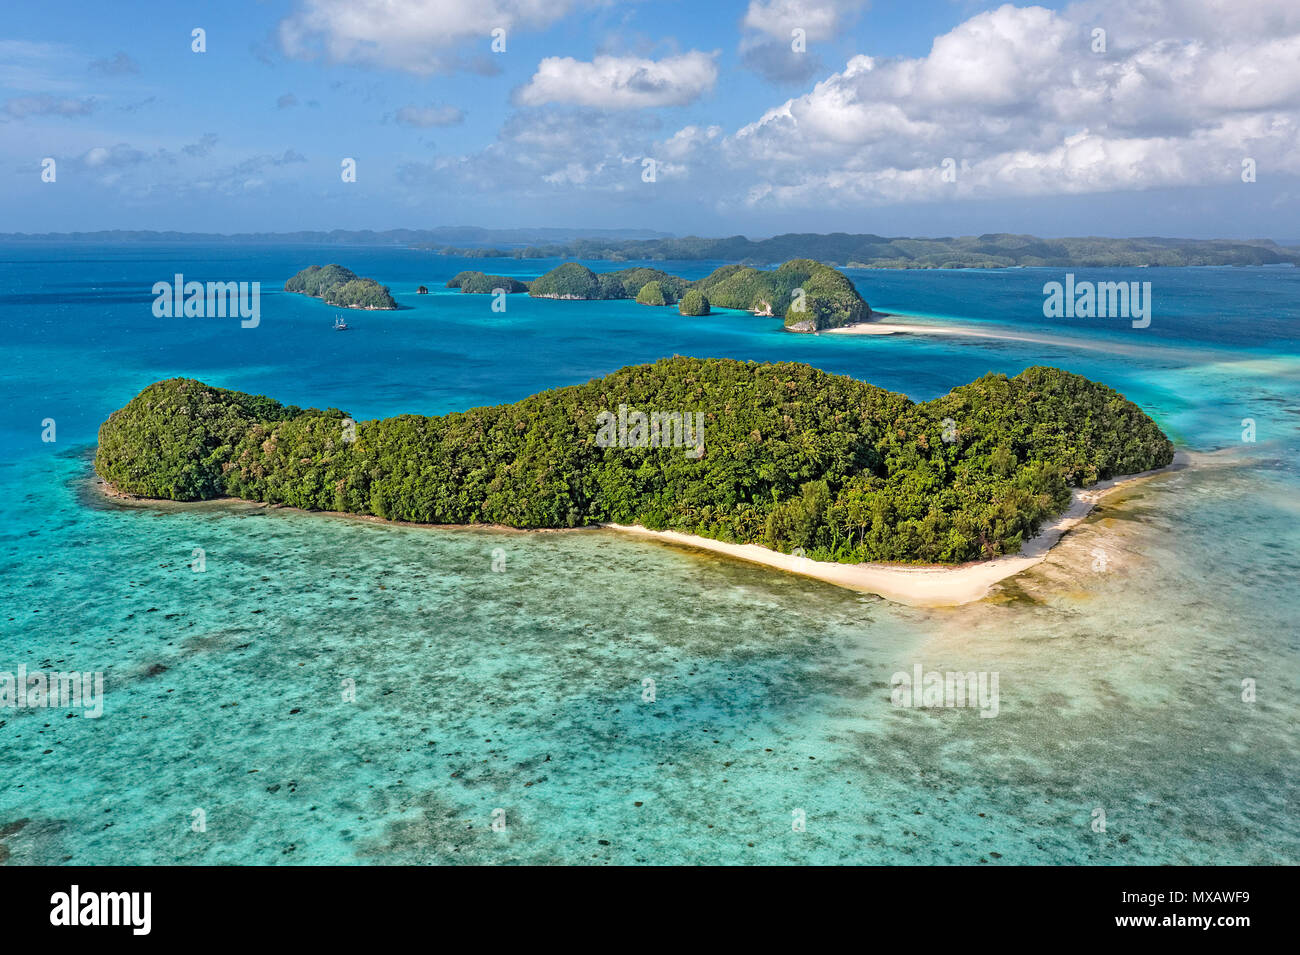 Luftaufnahme von Palau, Mikronesien, Asien | Luftaufnahme von Palau, Mikronesien, Asien Stockfoto